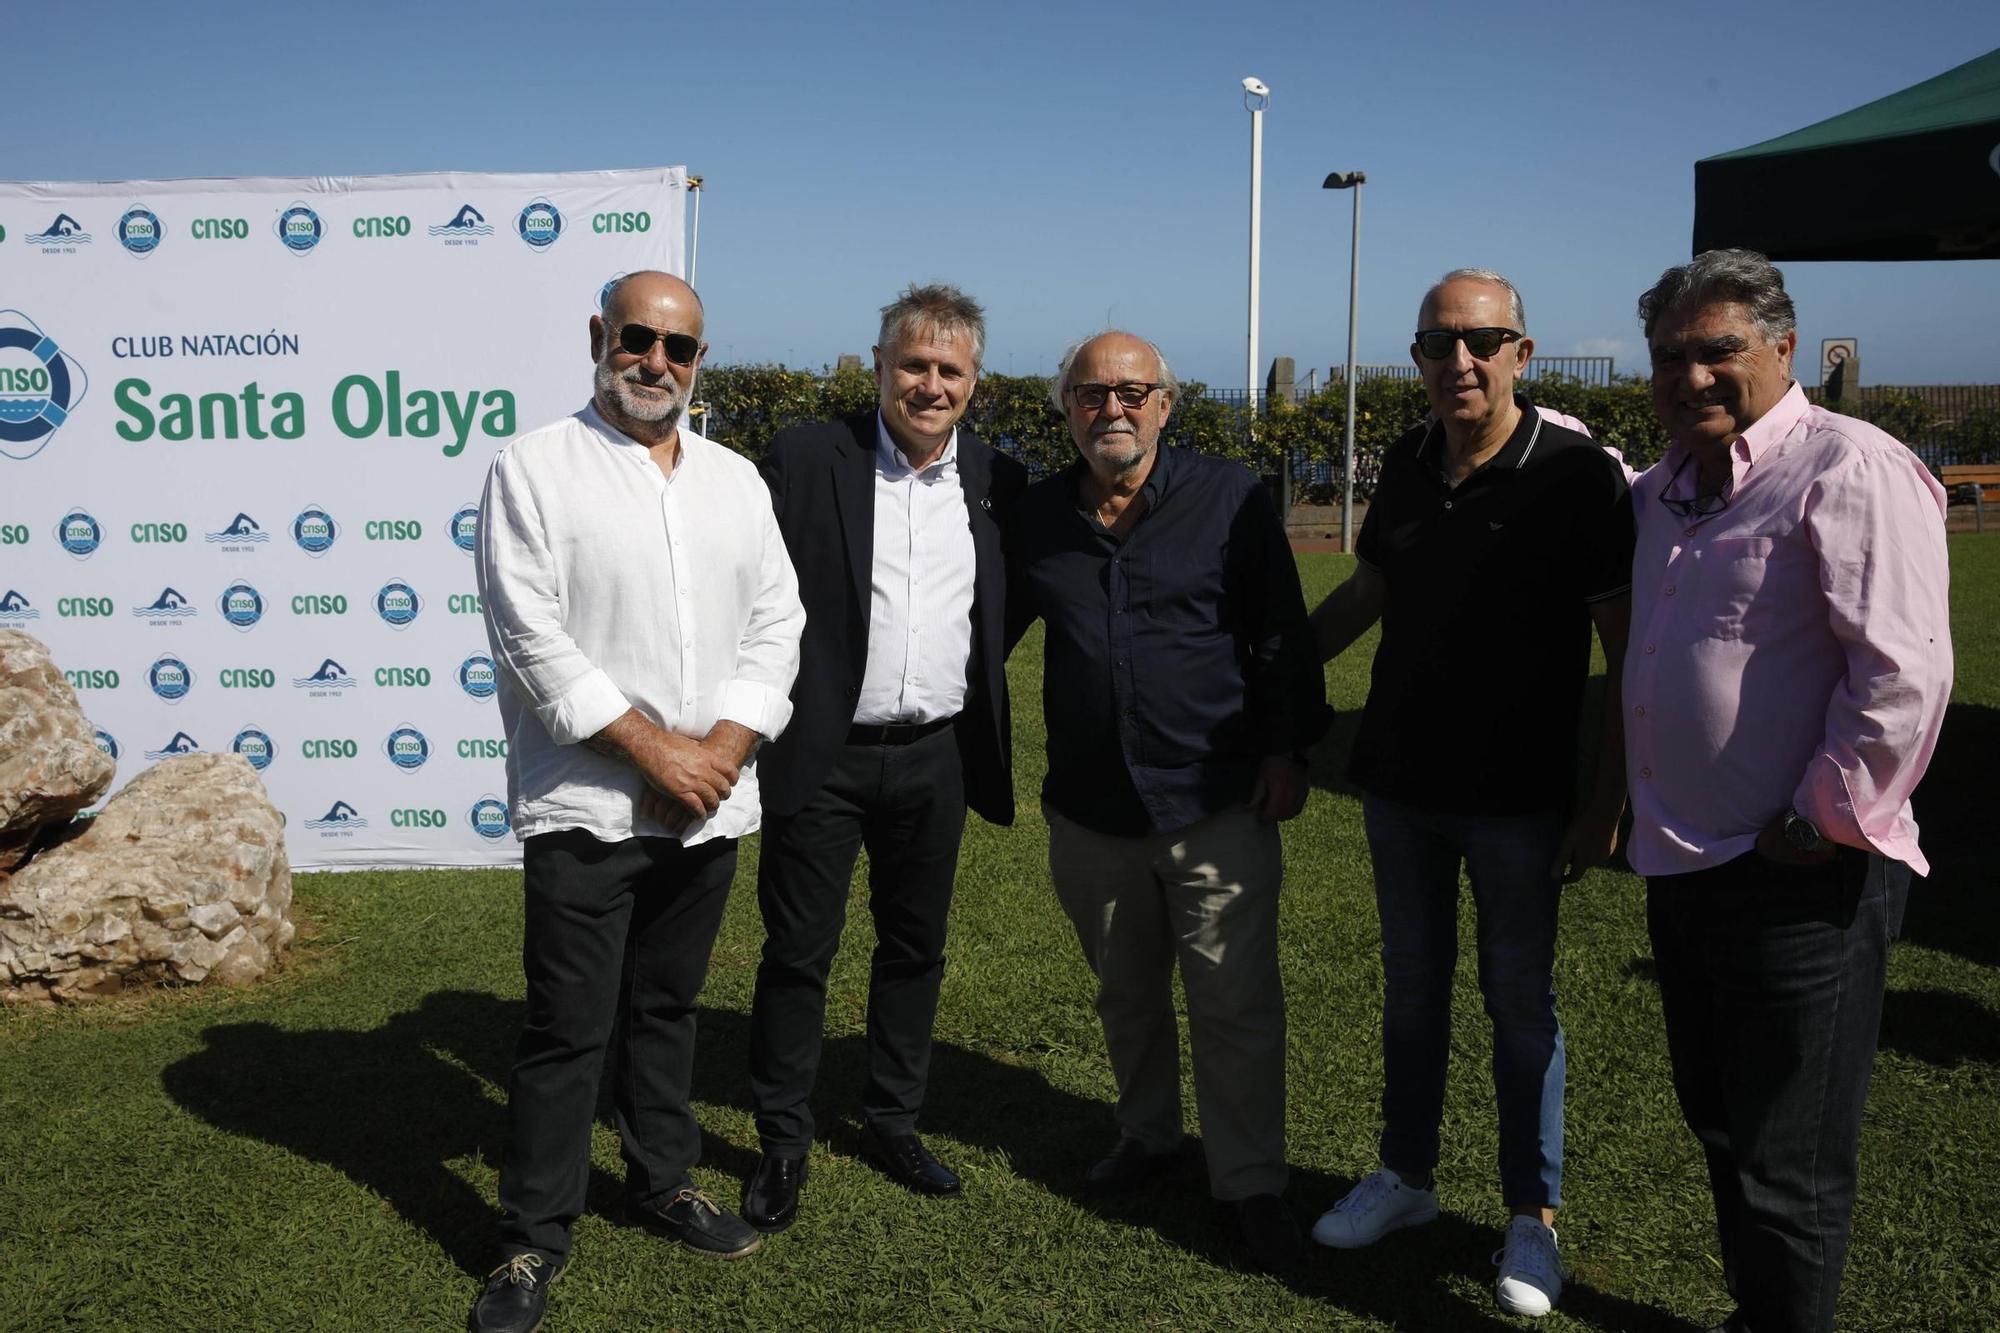 La celebración de los 70 años del Club de Natación Santa Olaya, en imágenes